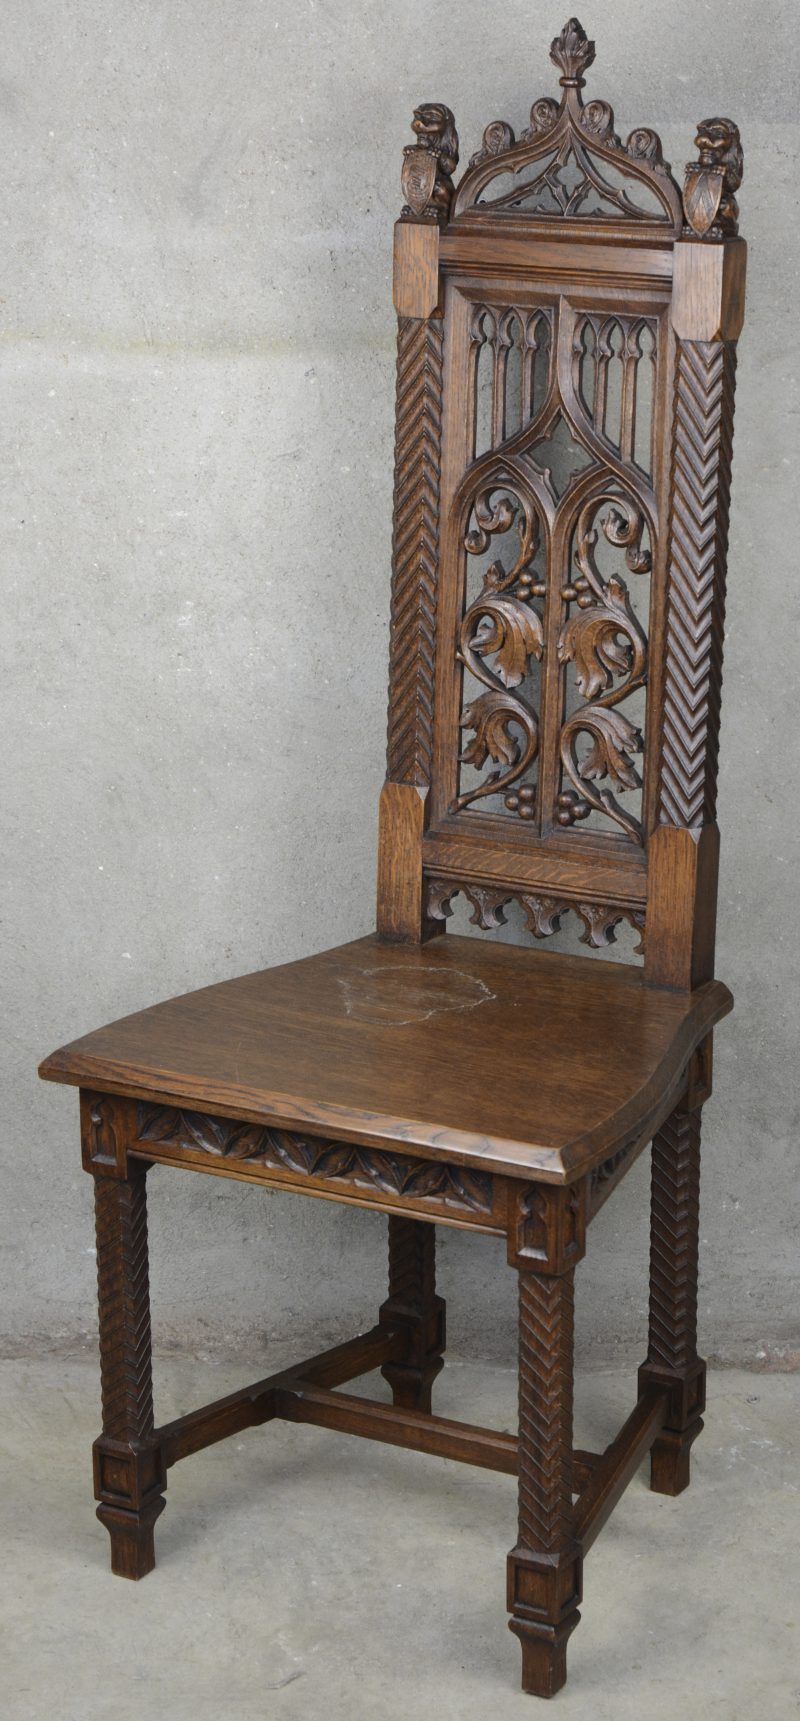 Een eikenhouten stoel in neogotische stijl, versierd met gesculpteerde leeuwtjes met schild op de rug.